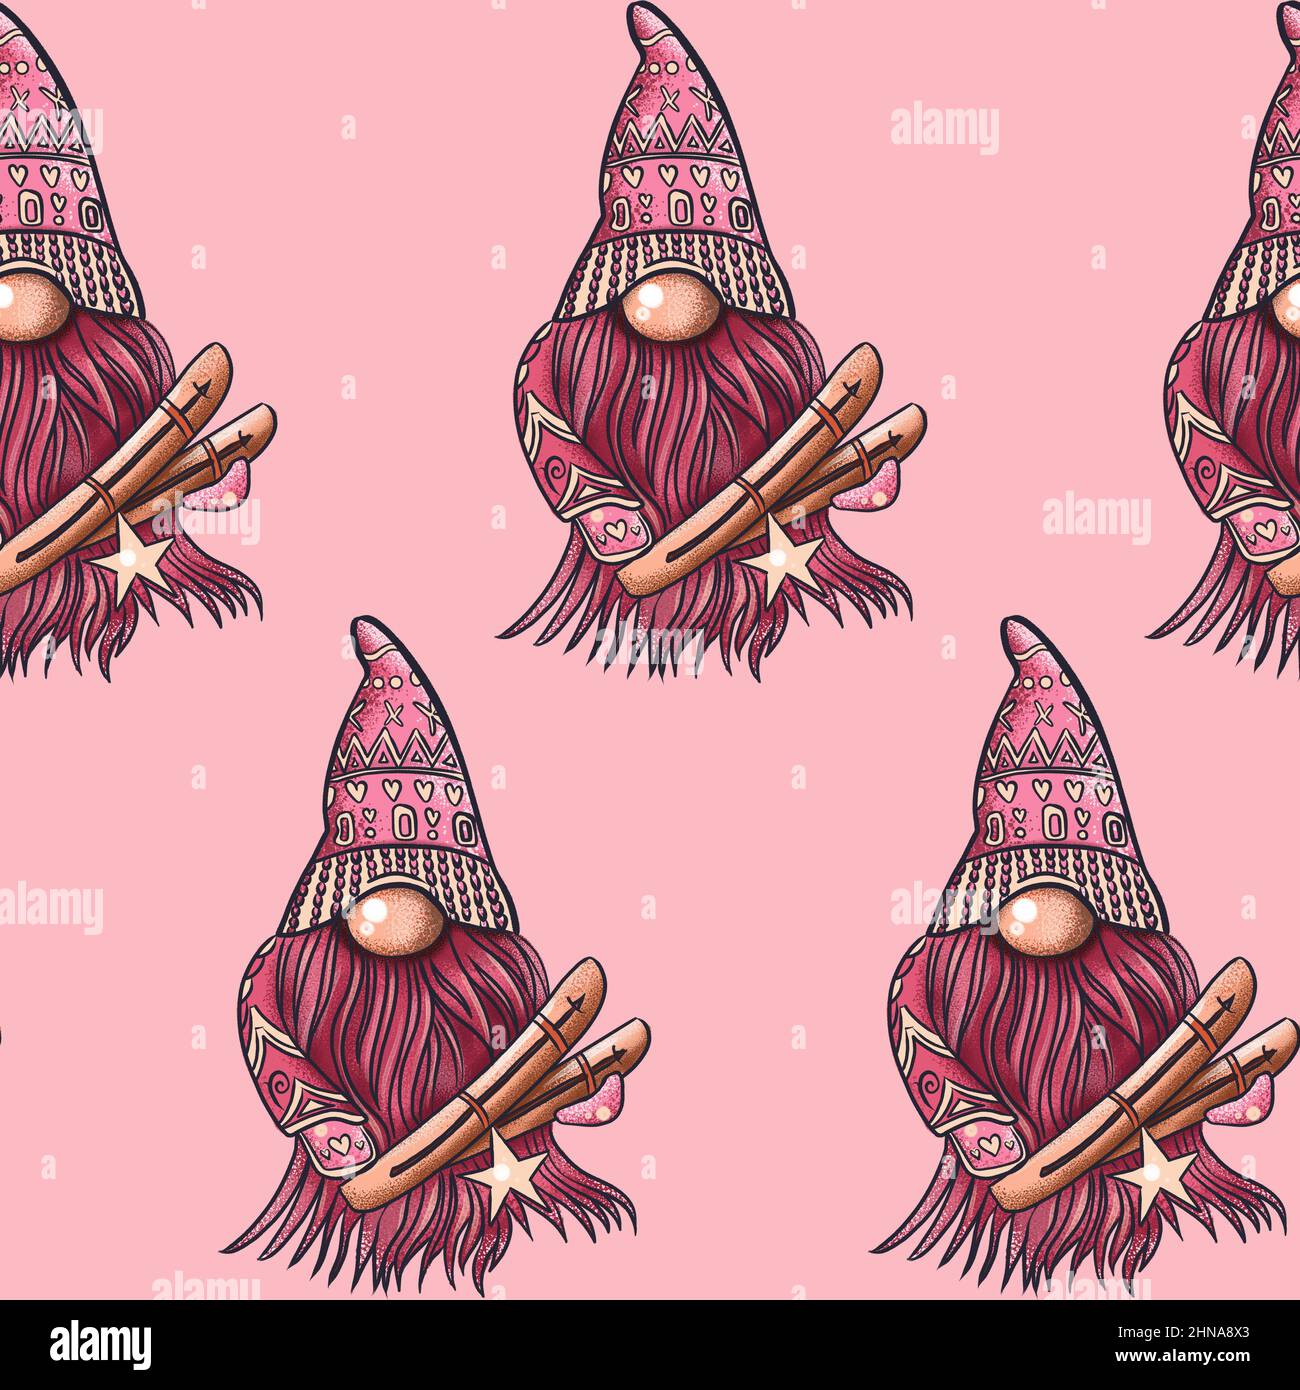 Nahtlose Musterdarstellung eines Gnoms mit einem Bart in einem Hut. Neujahr und weihnachten Symbol auf einem rosa Hintergrund. Hochwertige Illustration Stockfoto